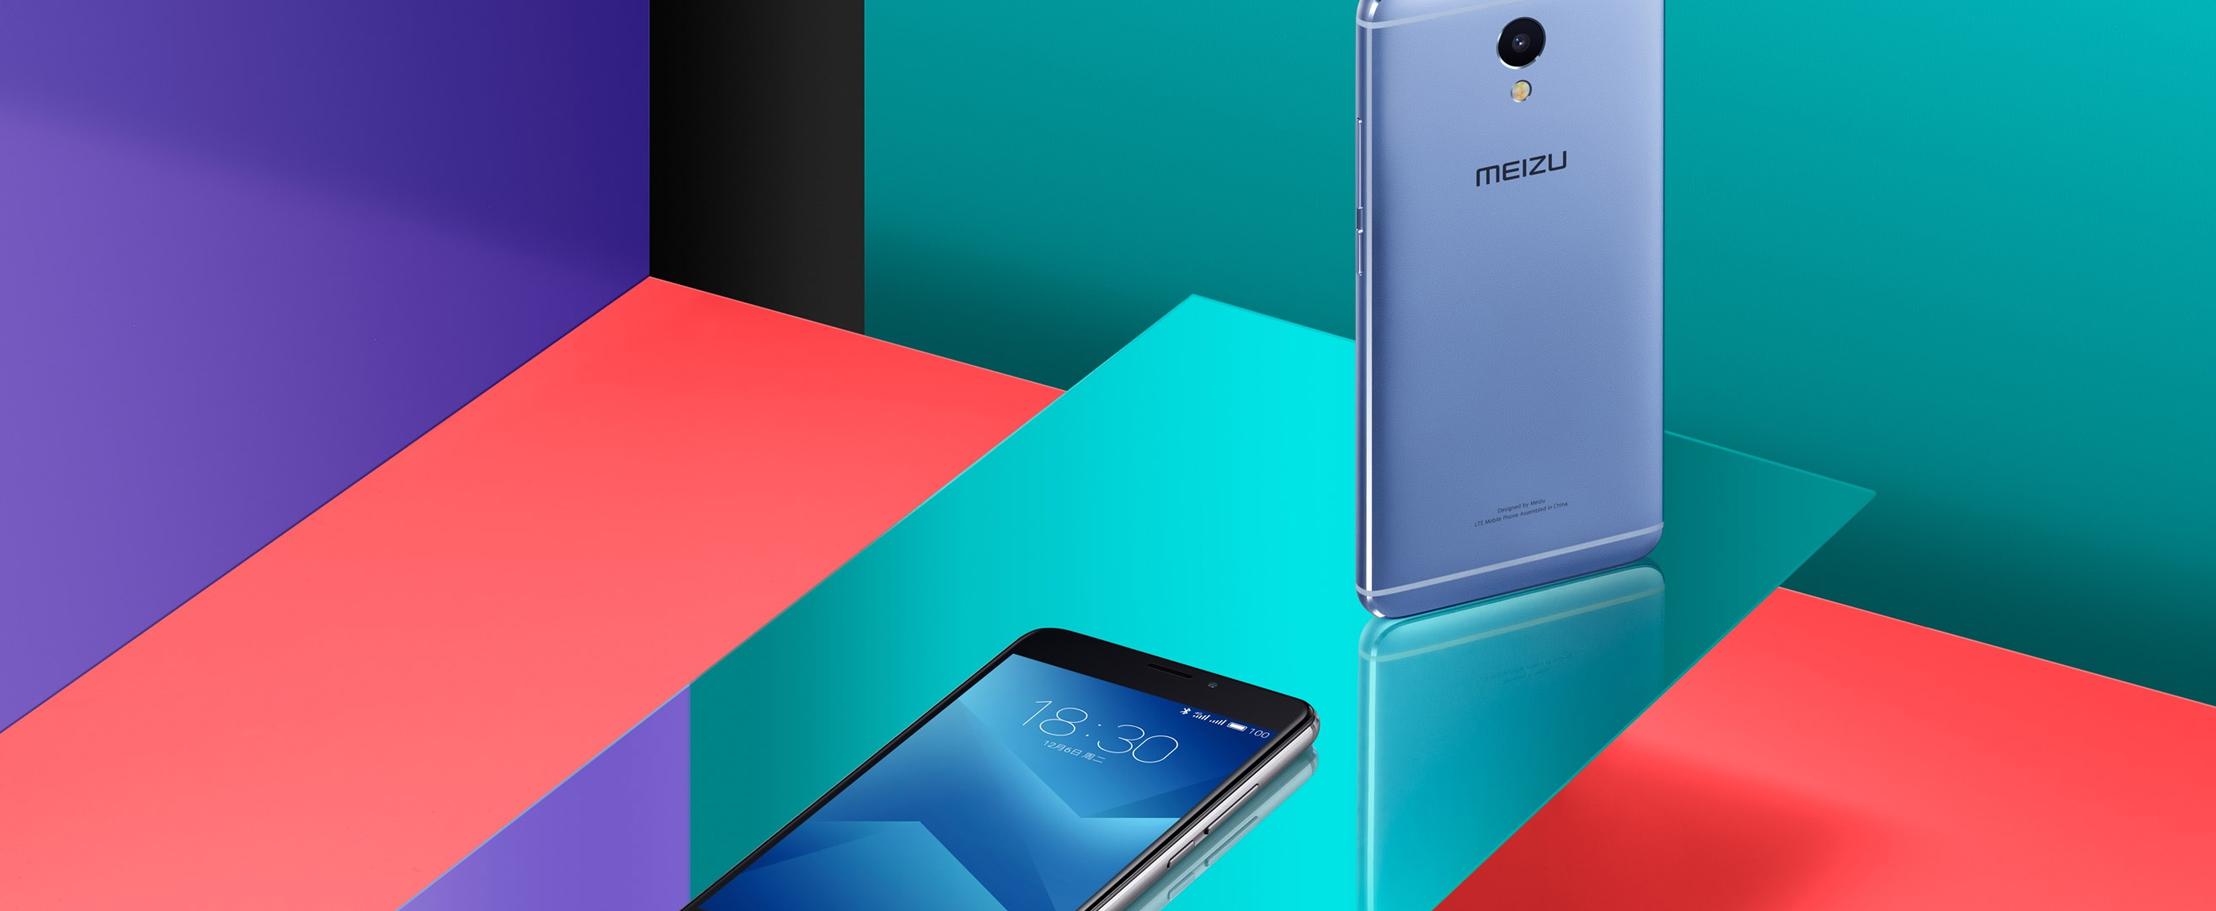 В России теперь можно купить Meizu M5 Note с огромной батарейкой